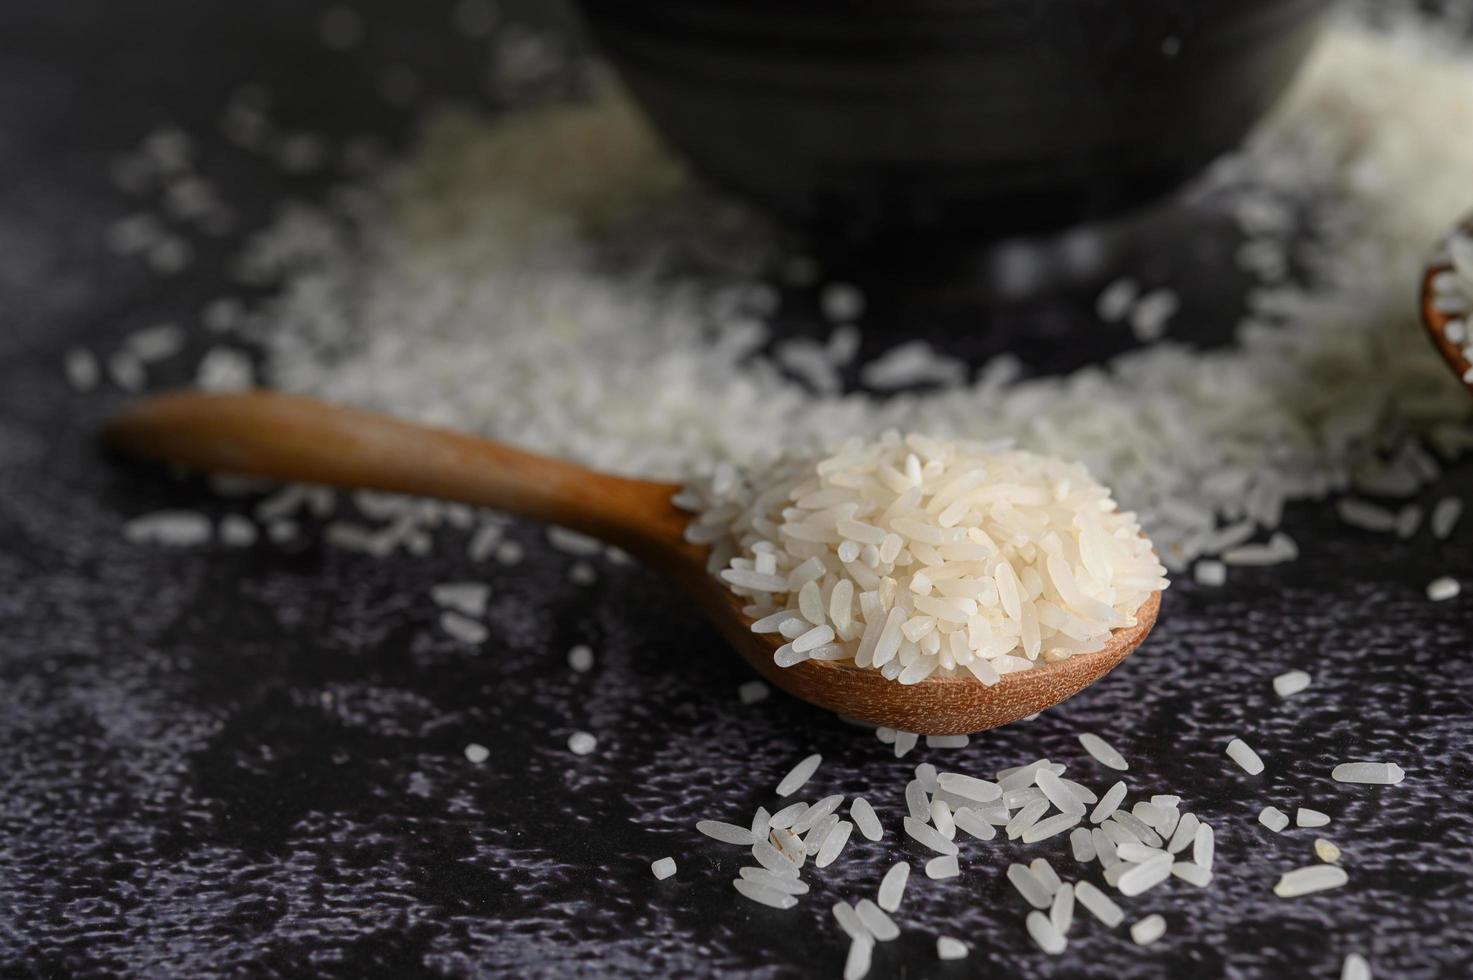 Close-up de arroz molido en tazones. foto